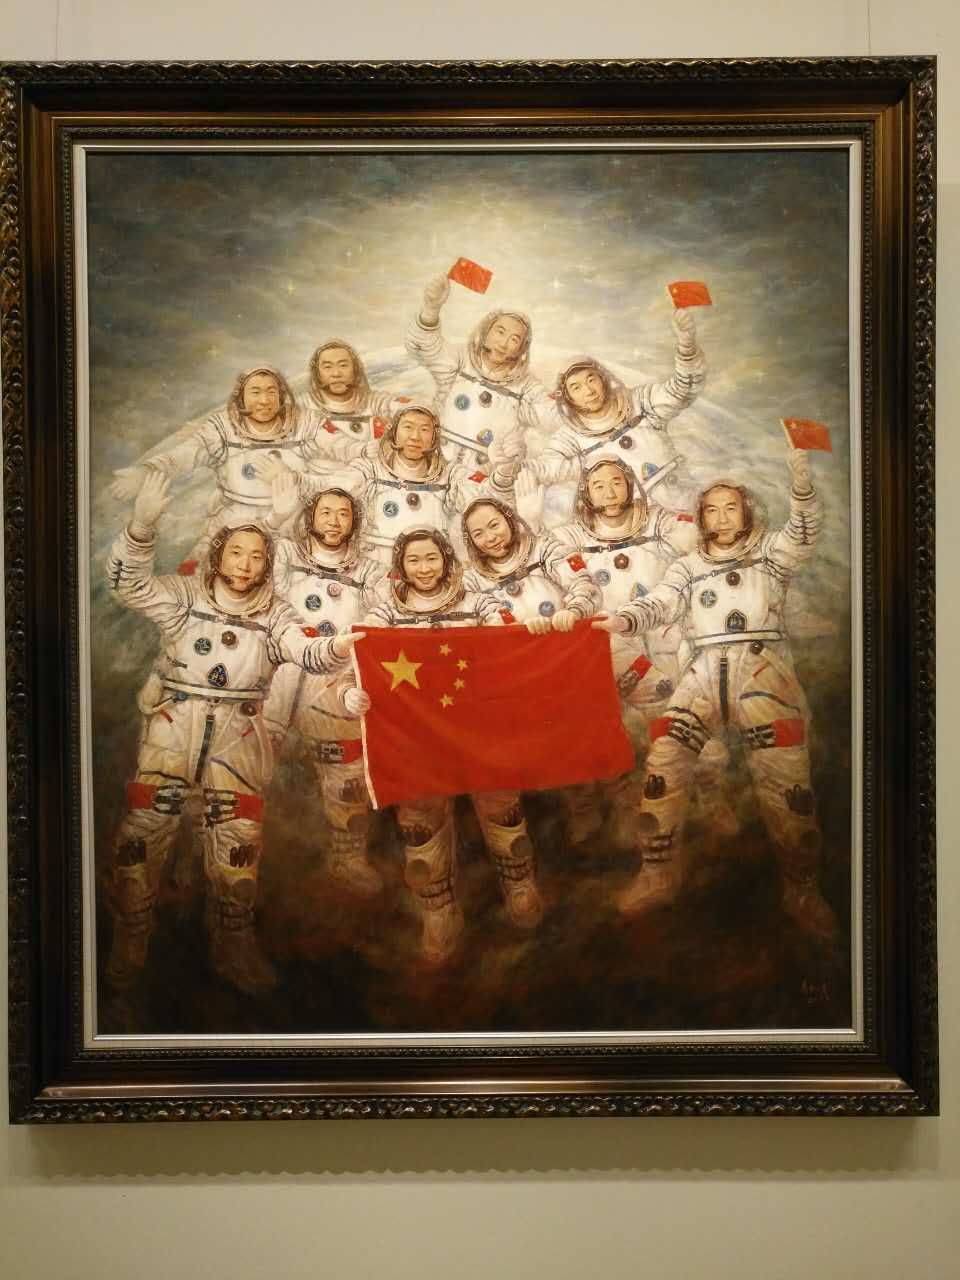 李红东热衷于创作航天题材作品,他创作的神舟五号油画作品《神圣使命